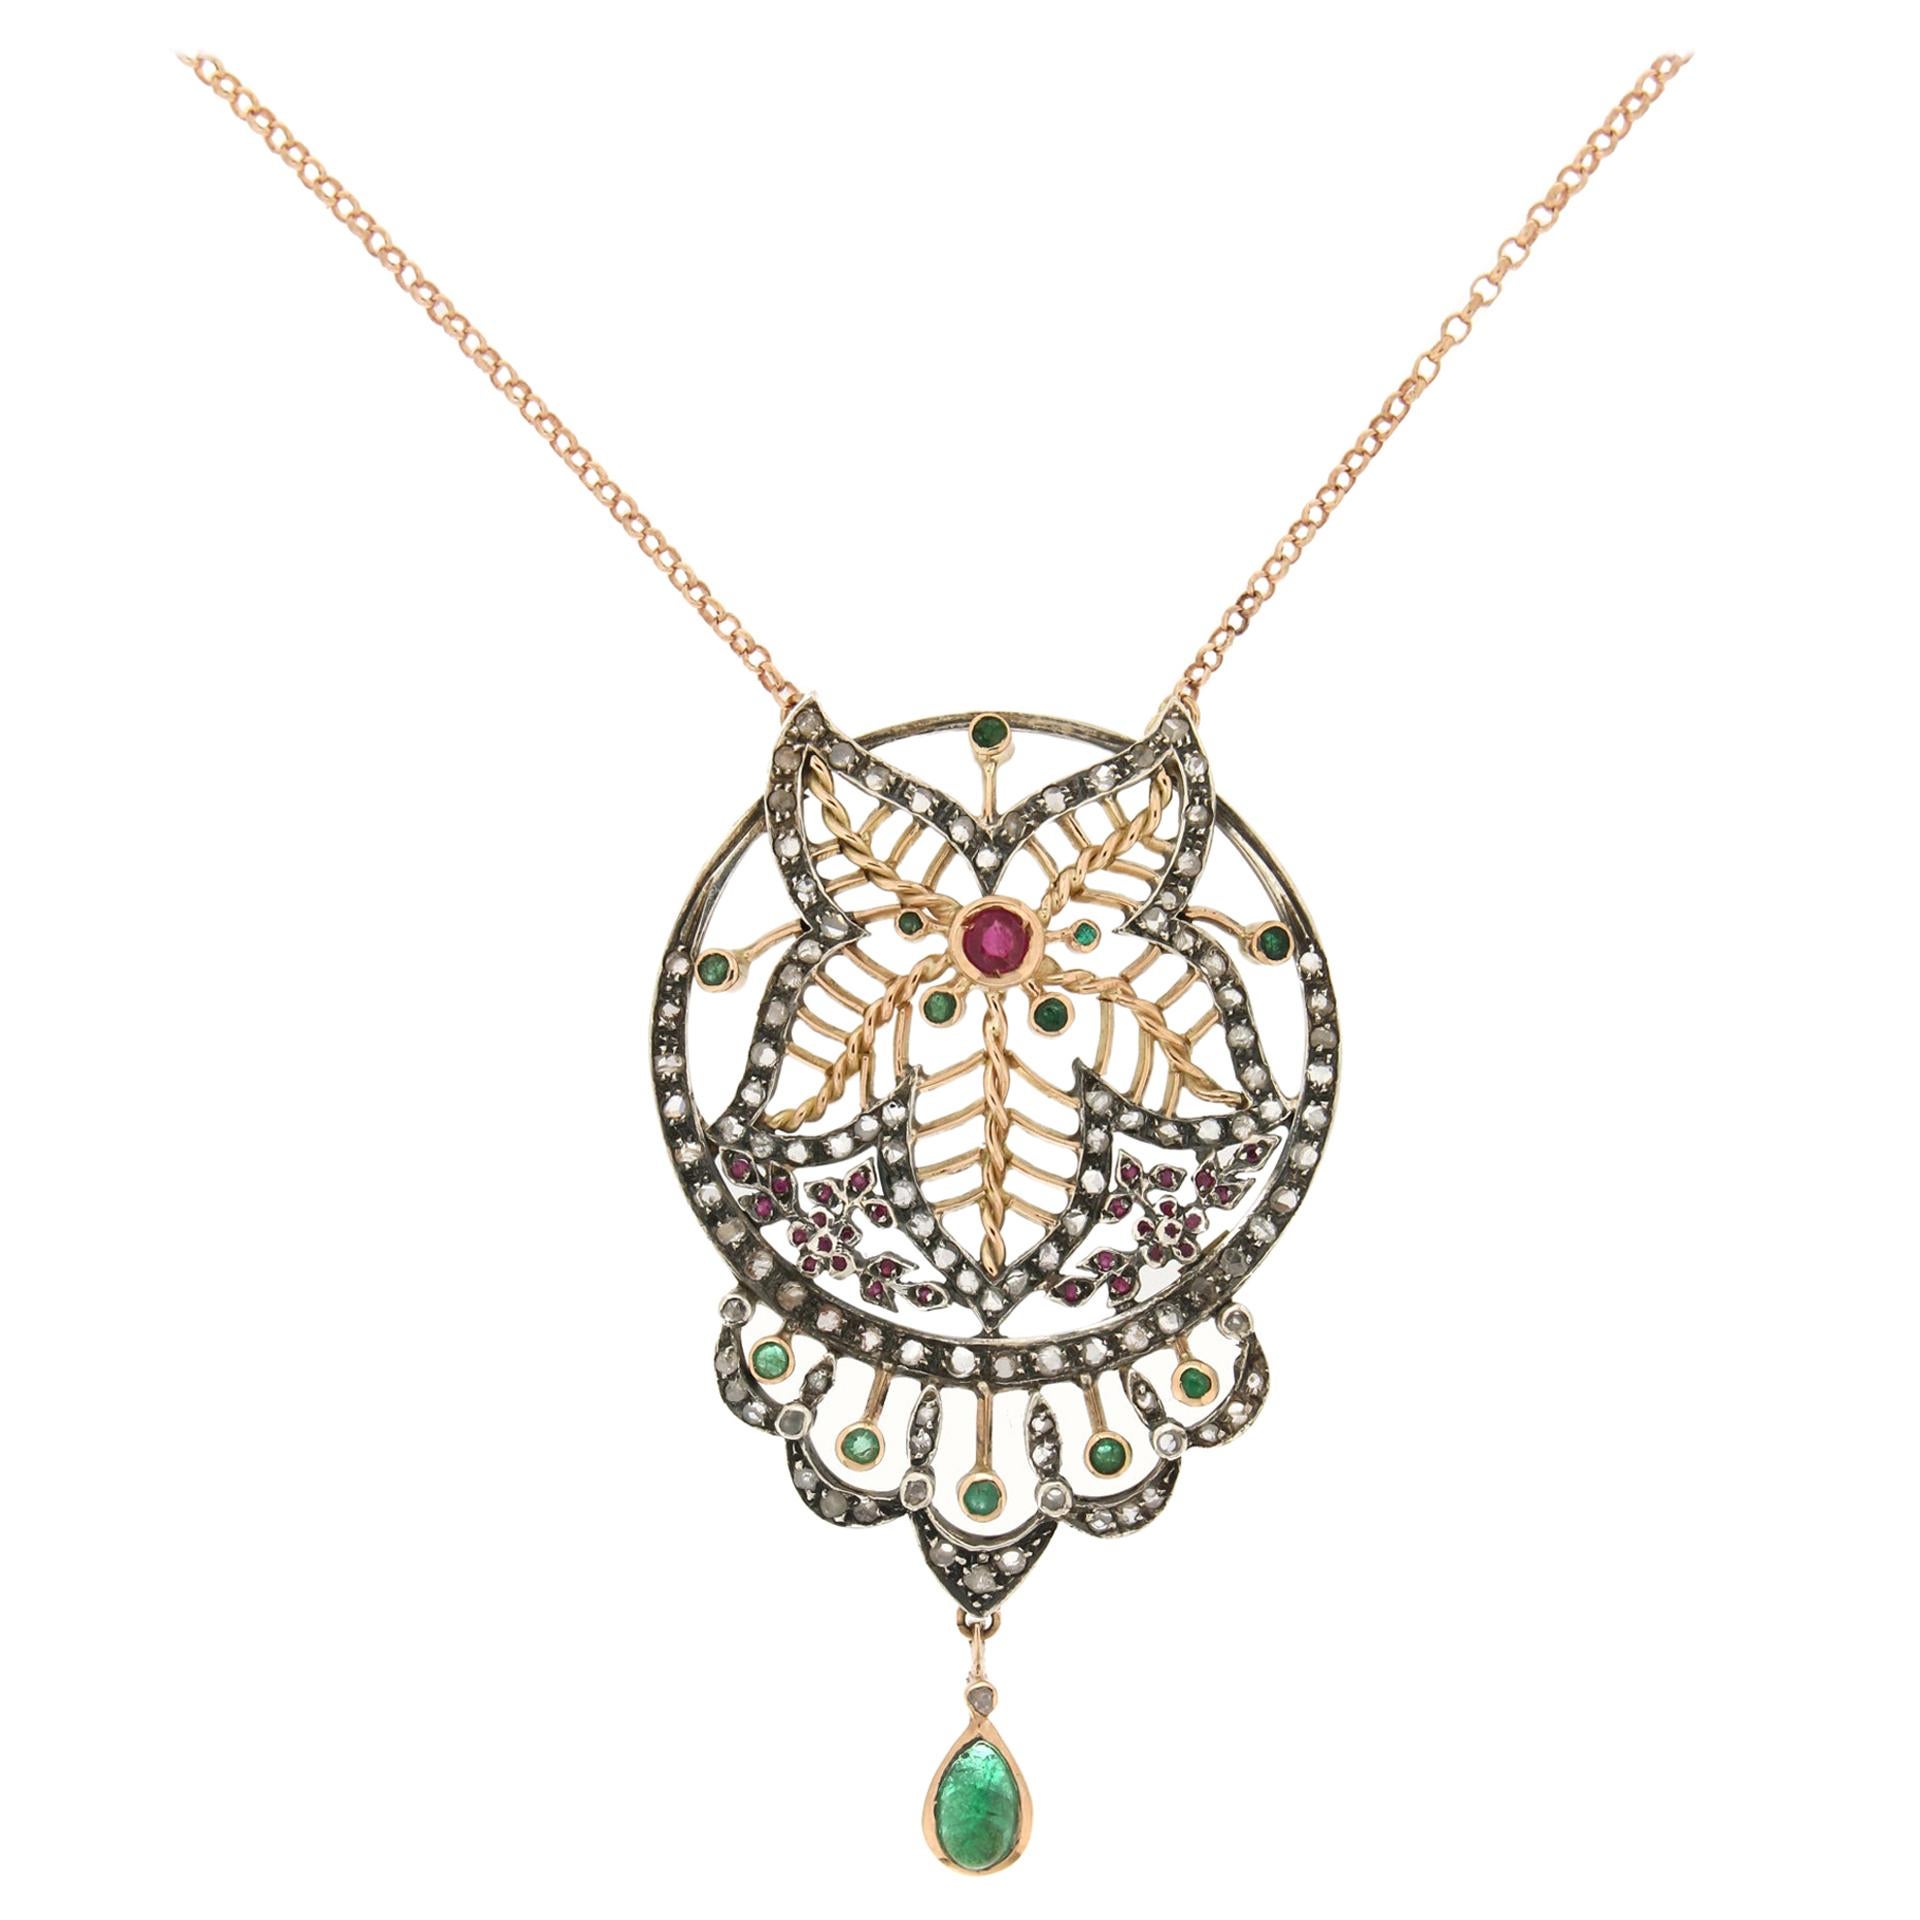 Handgefertigte Halskette aus 14 Karat Gold Silber Diamanten Smaragden Rubin